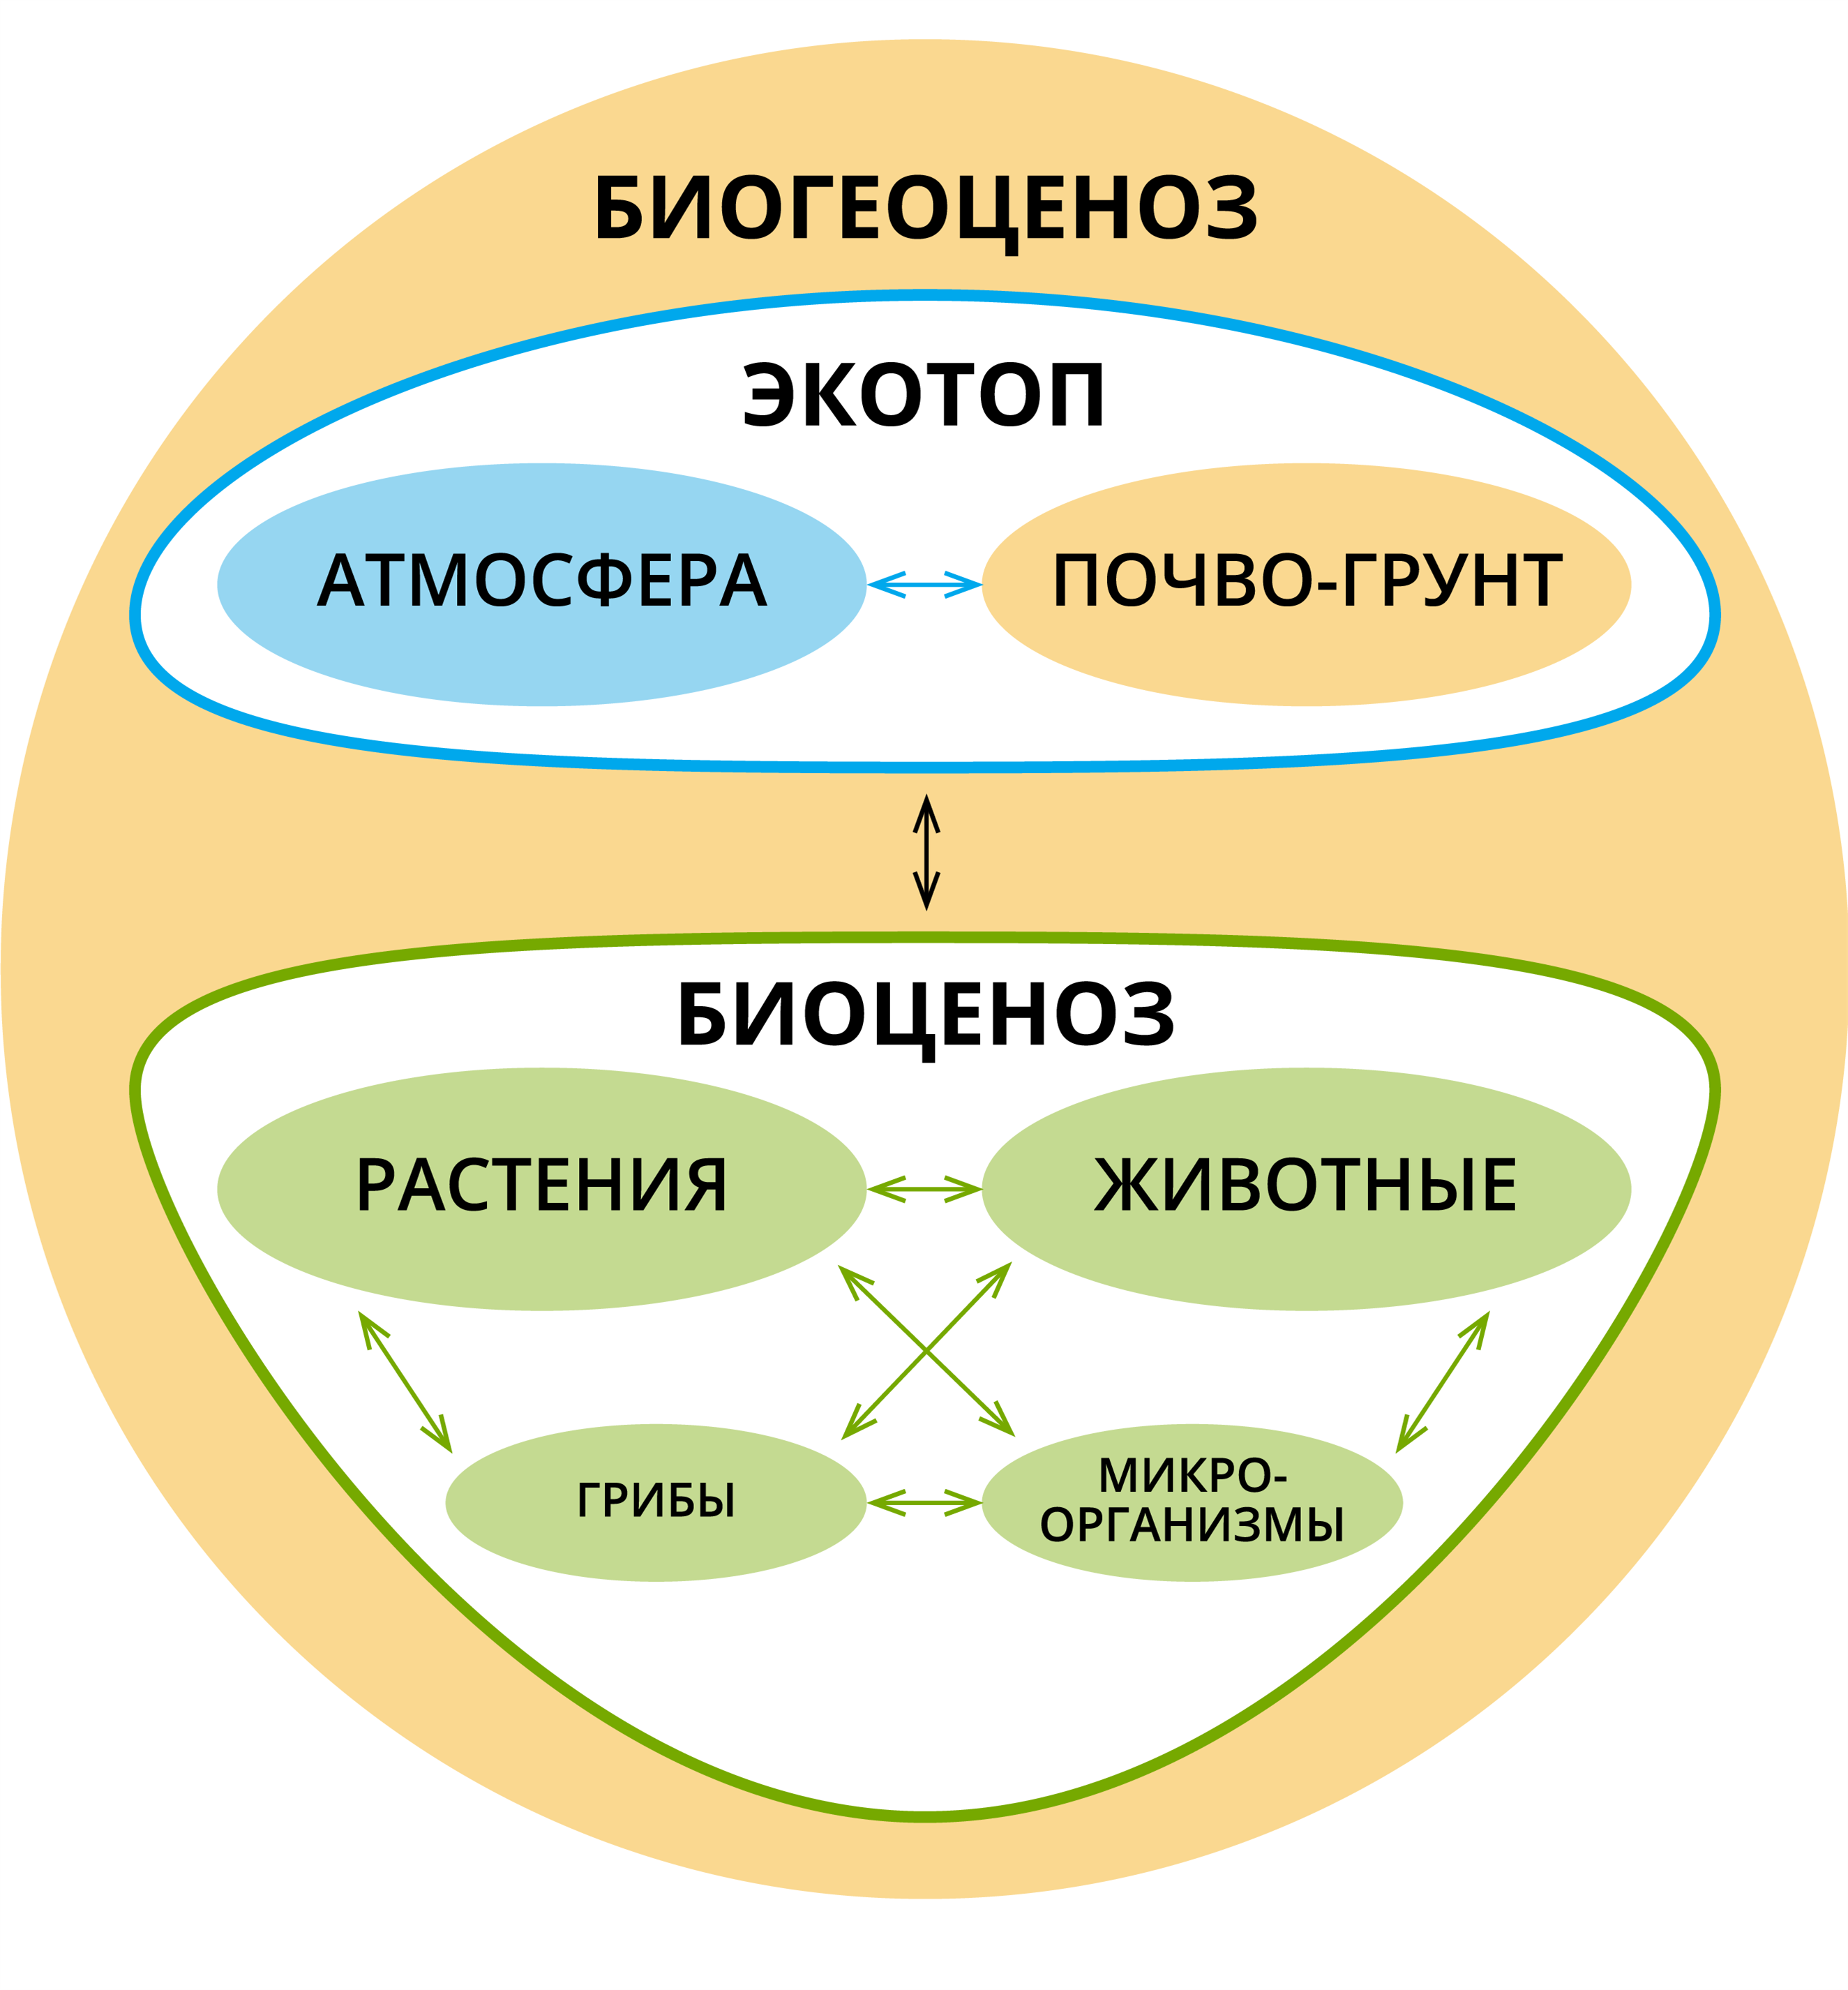 Биогеоценоз. Биоценоз и биогеоценоз. Понятие о биоценозе биогеоценозе и экосистеме. Схема биогеоценоза.